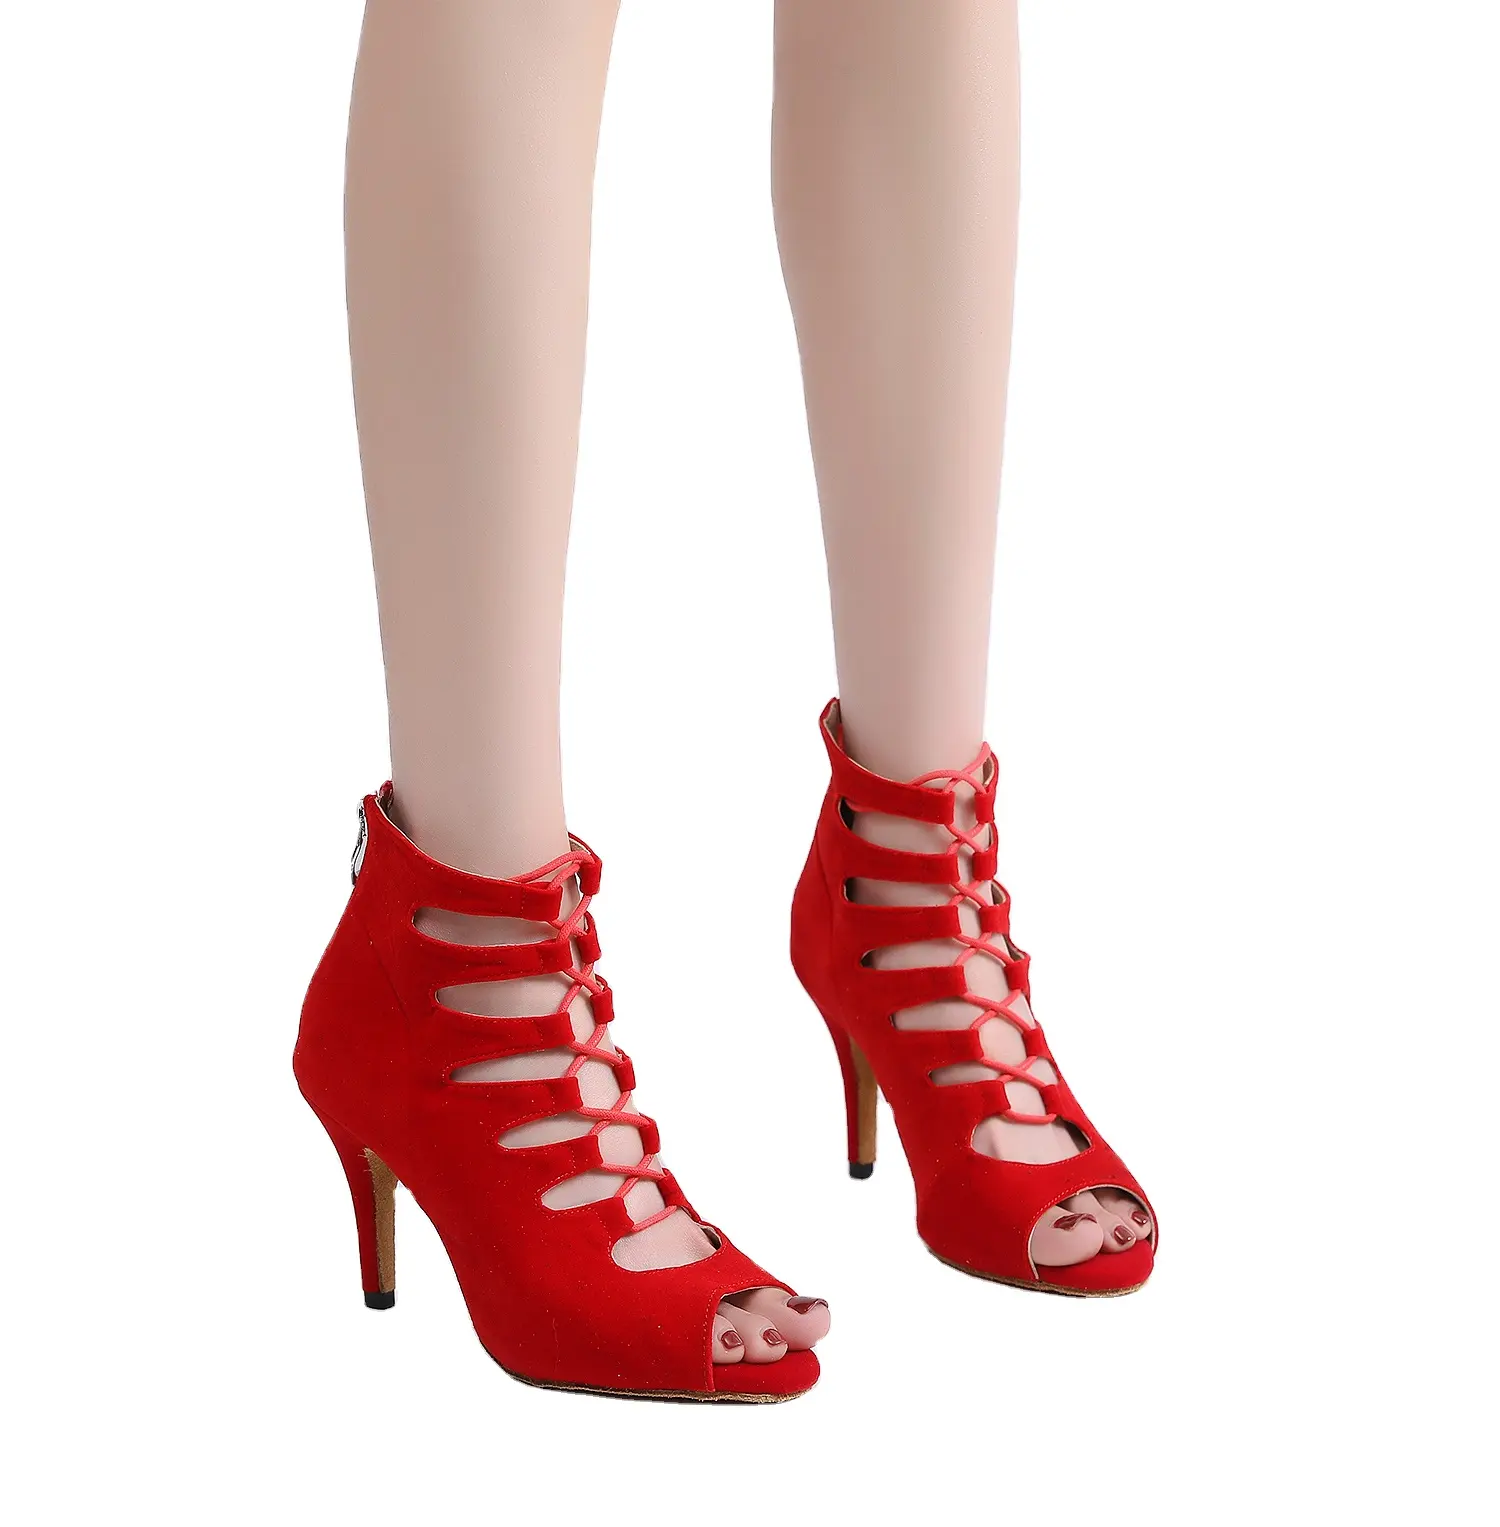 Damen weiche sohle rote kurze stiefel lateinische tanzschuhe fischmaul hohe absätze tanzschuhe schwarz tanzschuhe schnürung